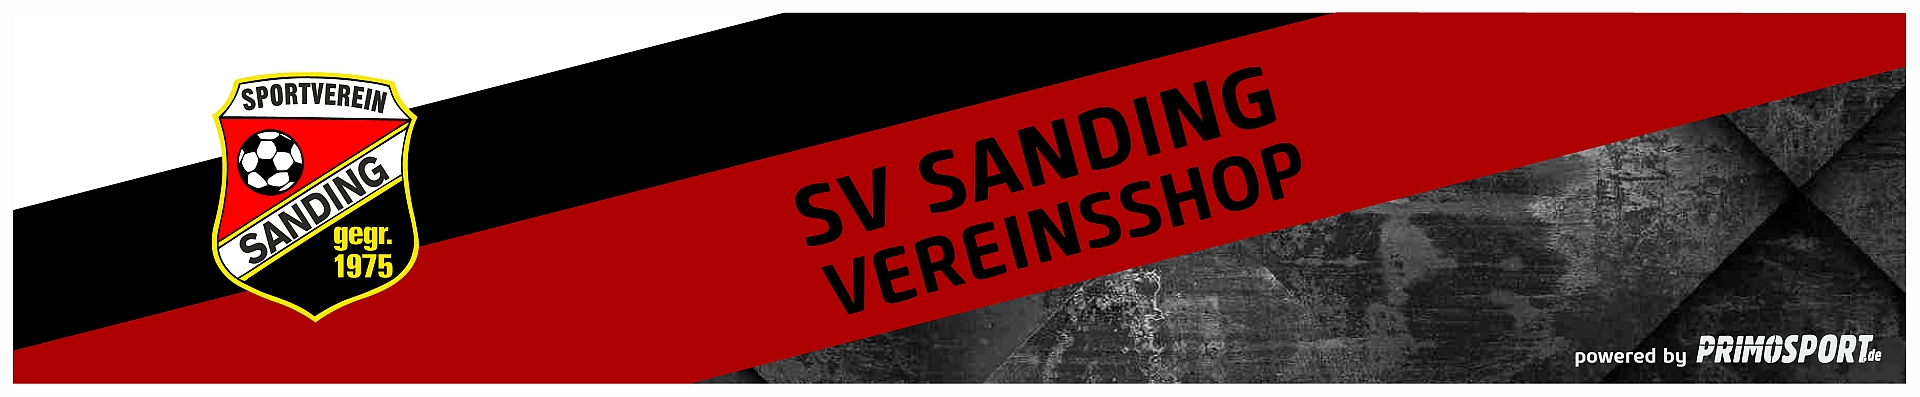 SV Sanding